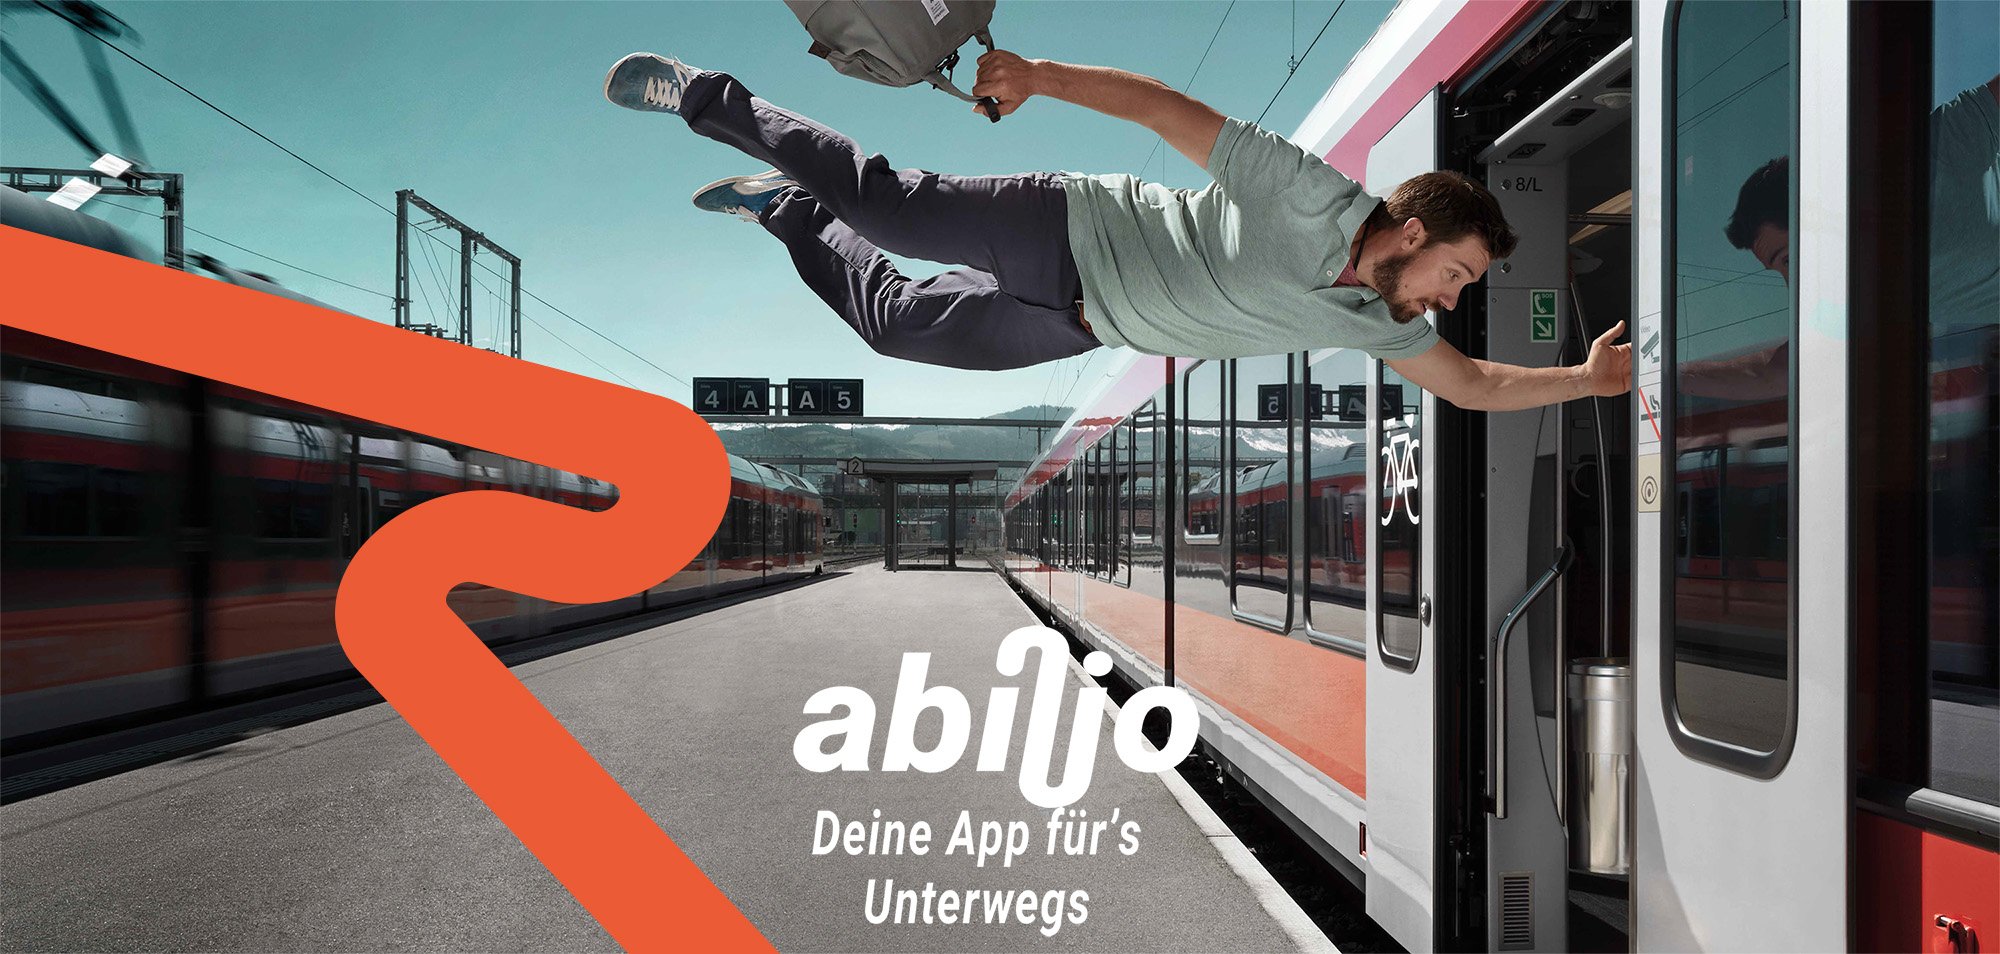 abilio, die App für‘s Unterwegs